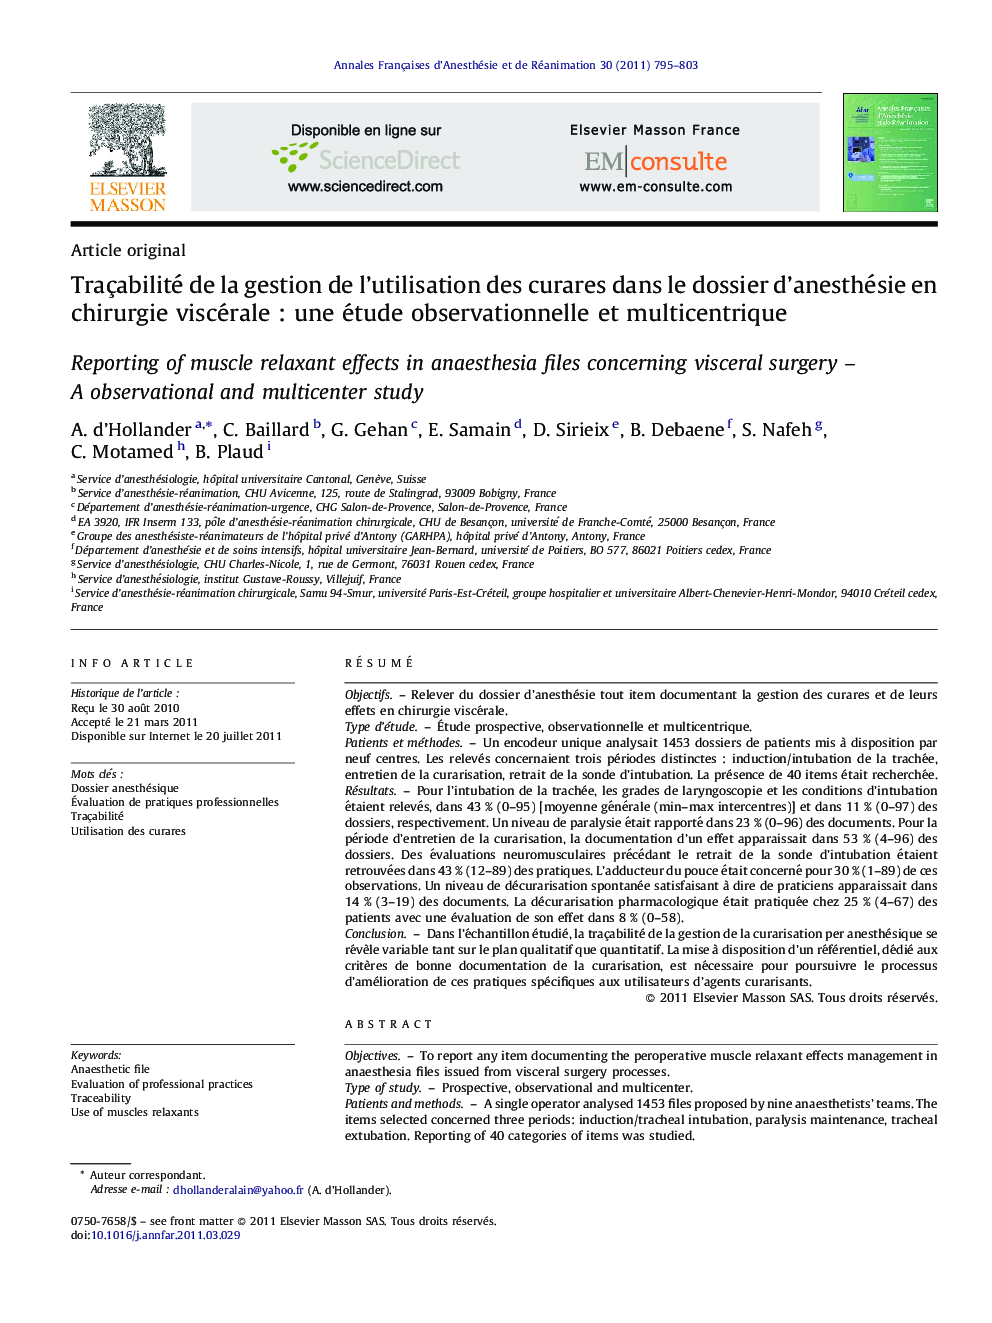 Traçabilité de la gestion de l'utilisation des curares dans le dossier d'anesthésie en chirurgie viscéraleÂ : une étude observationnelle et multicentrique